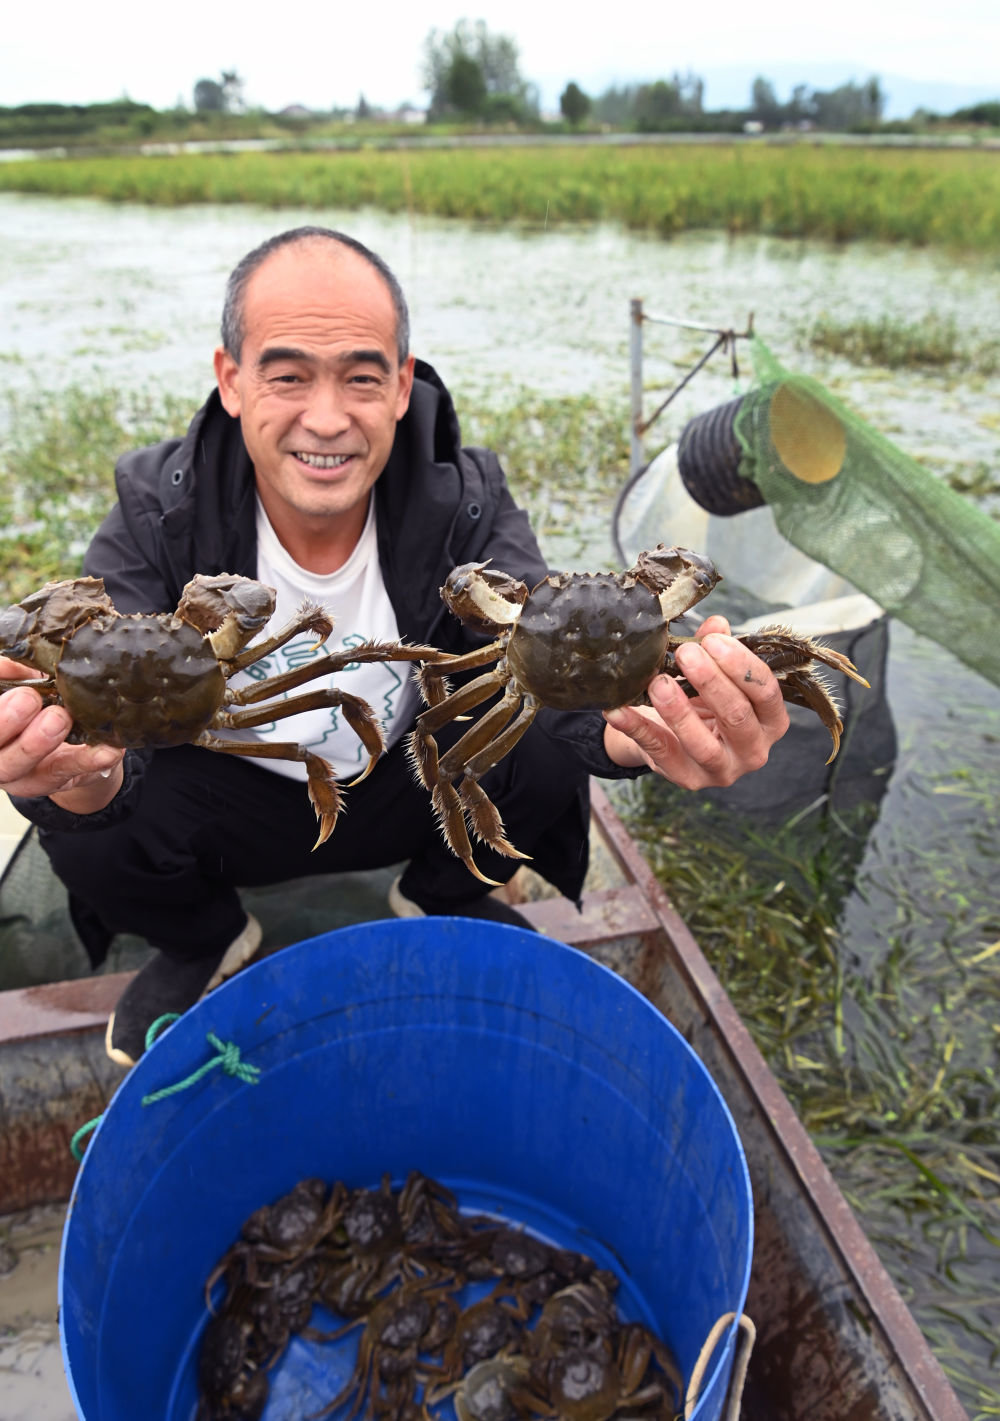 陕西汉中市城固县龙头镇明博生态养殖基地养殖大户王秋林展示捕获的螃蟹（9月20日摄）。